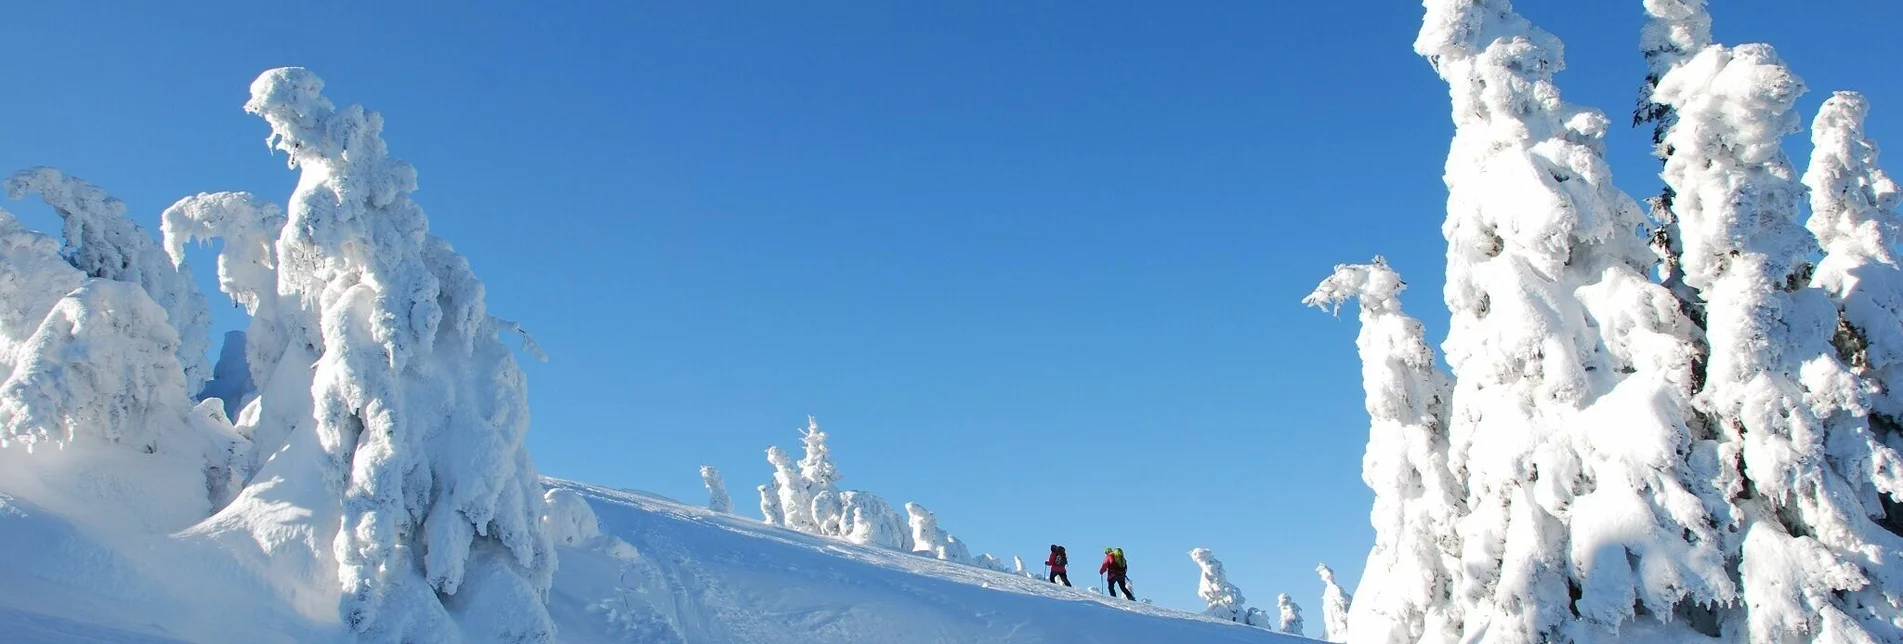 Ski Touring Skitour auf die Schneealm - Touren-Impression #1 | © Naturpark Mürzer Oberland